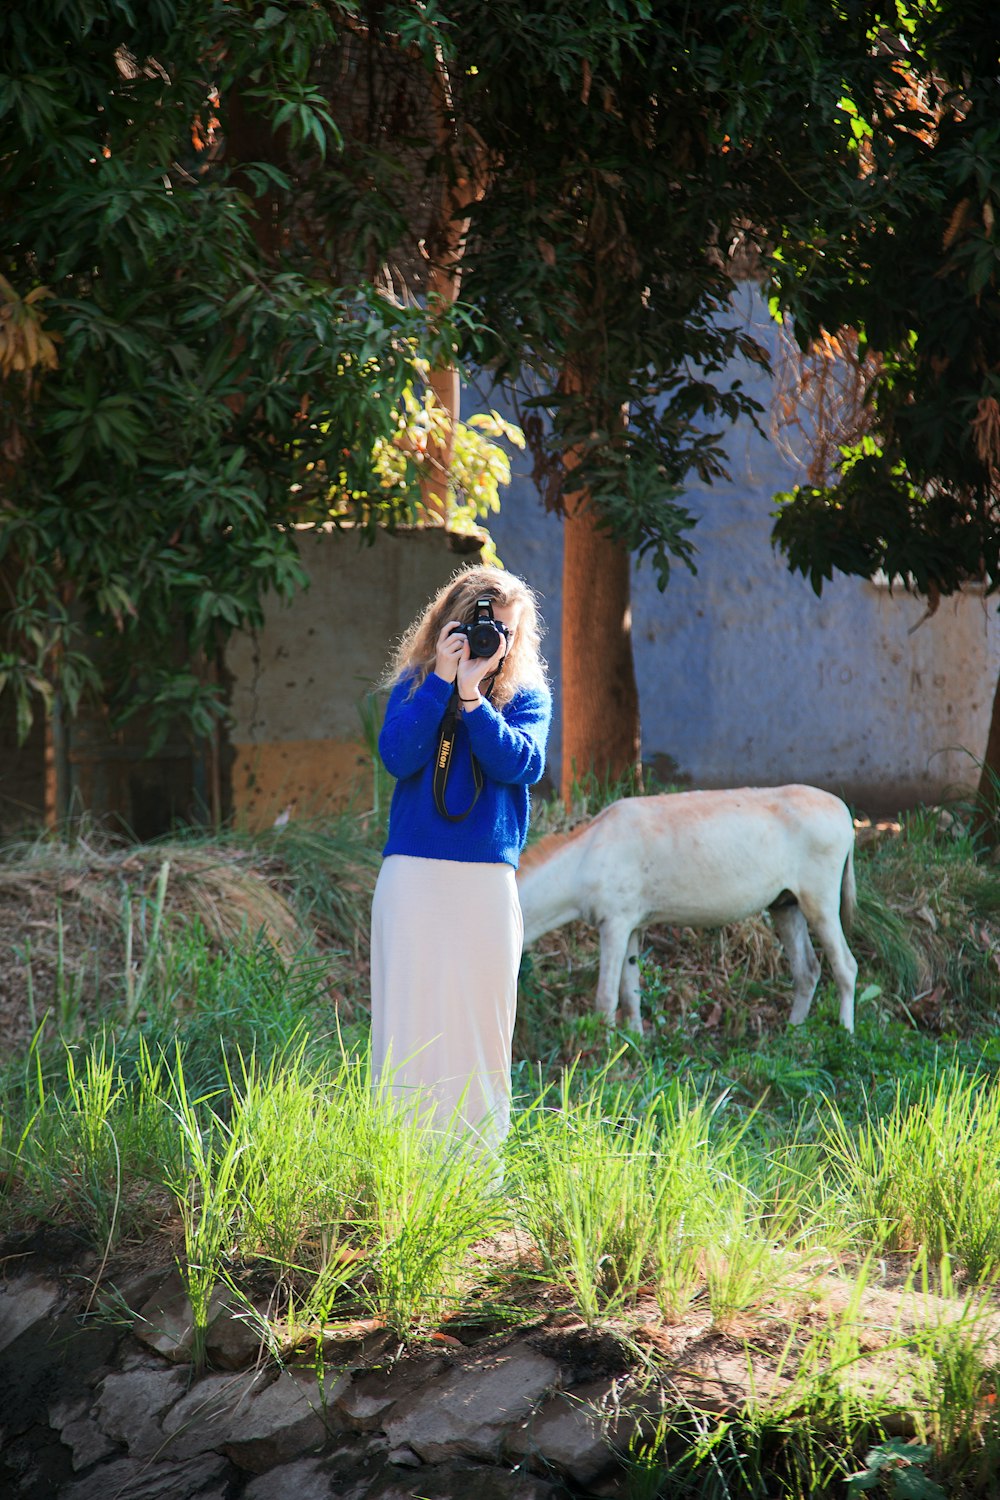 Eine Frau macht ein Foto von einer Kuh